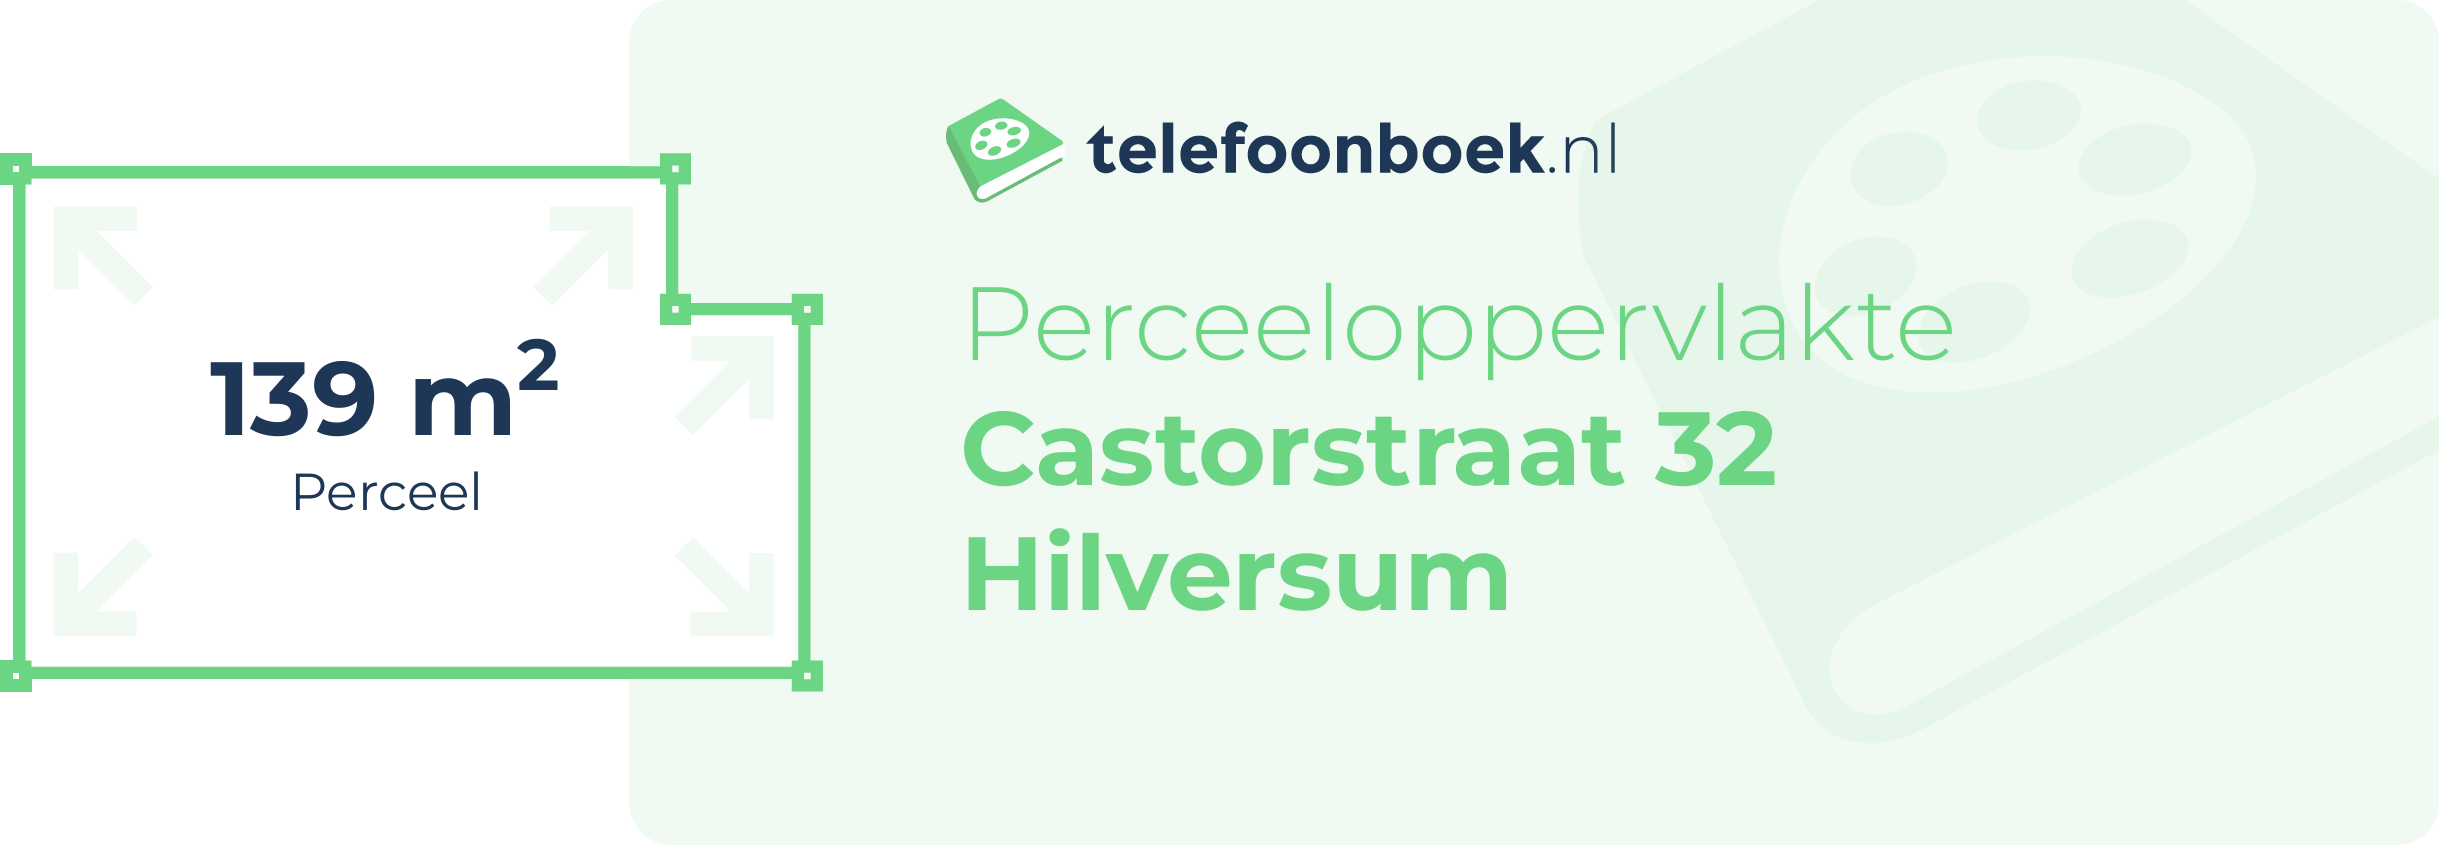 Perceeloppervlakte Castorstraat 32 Hilversum